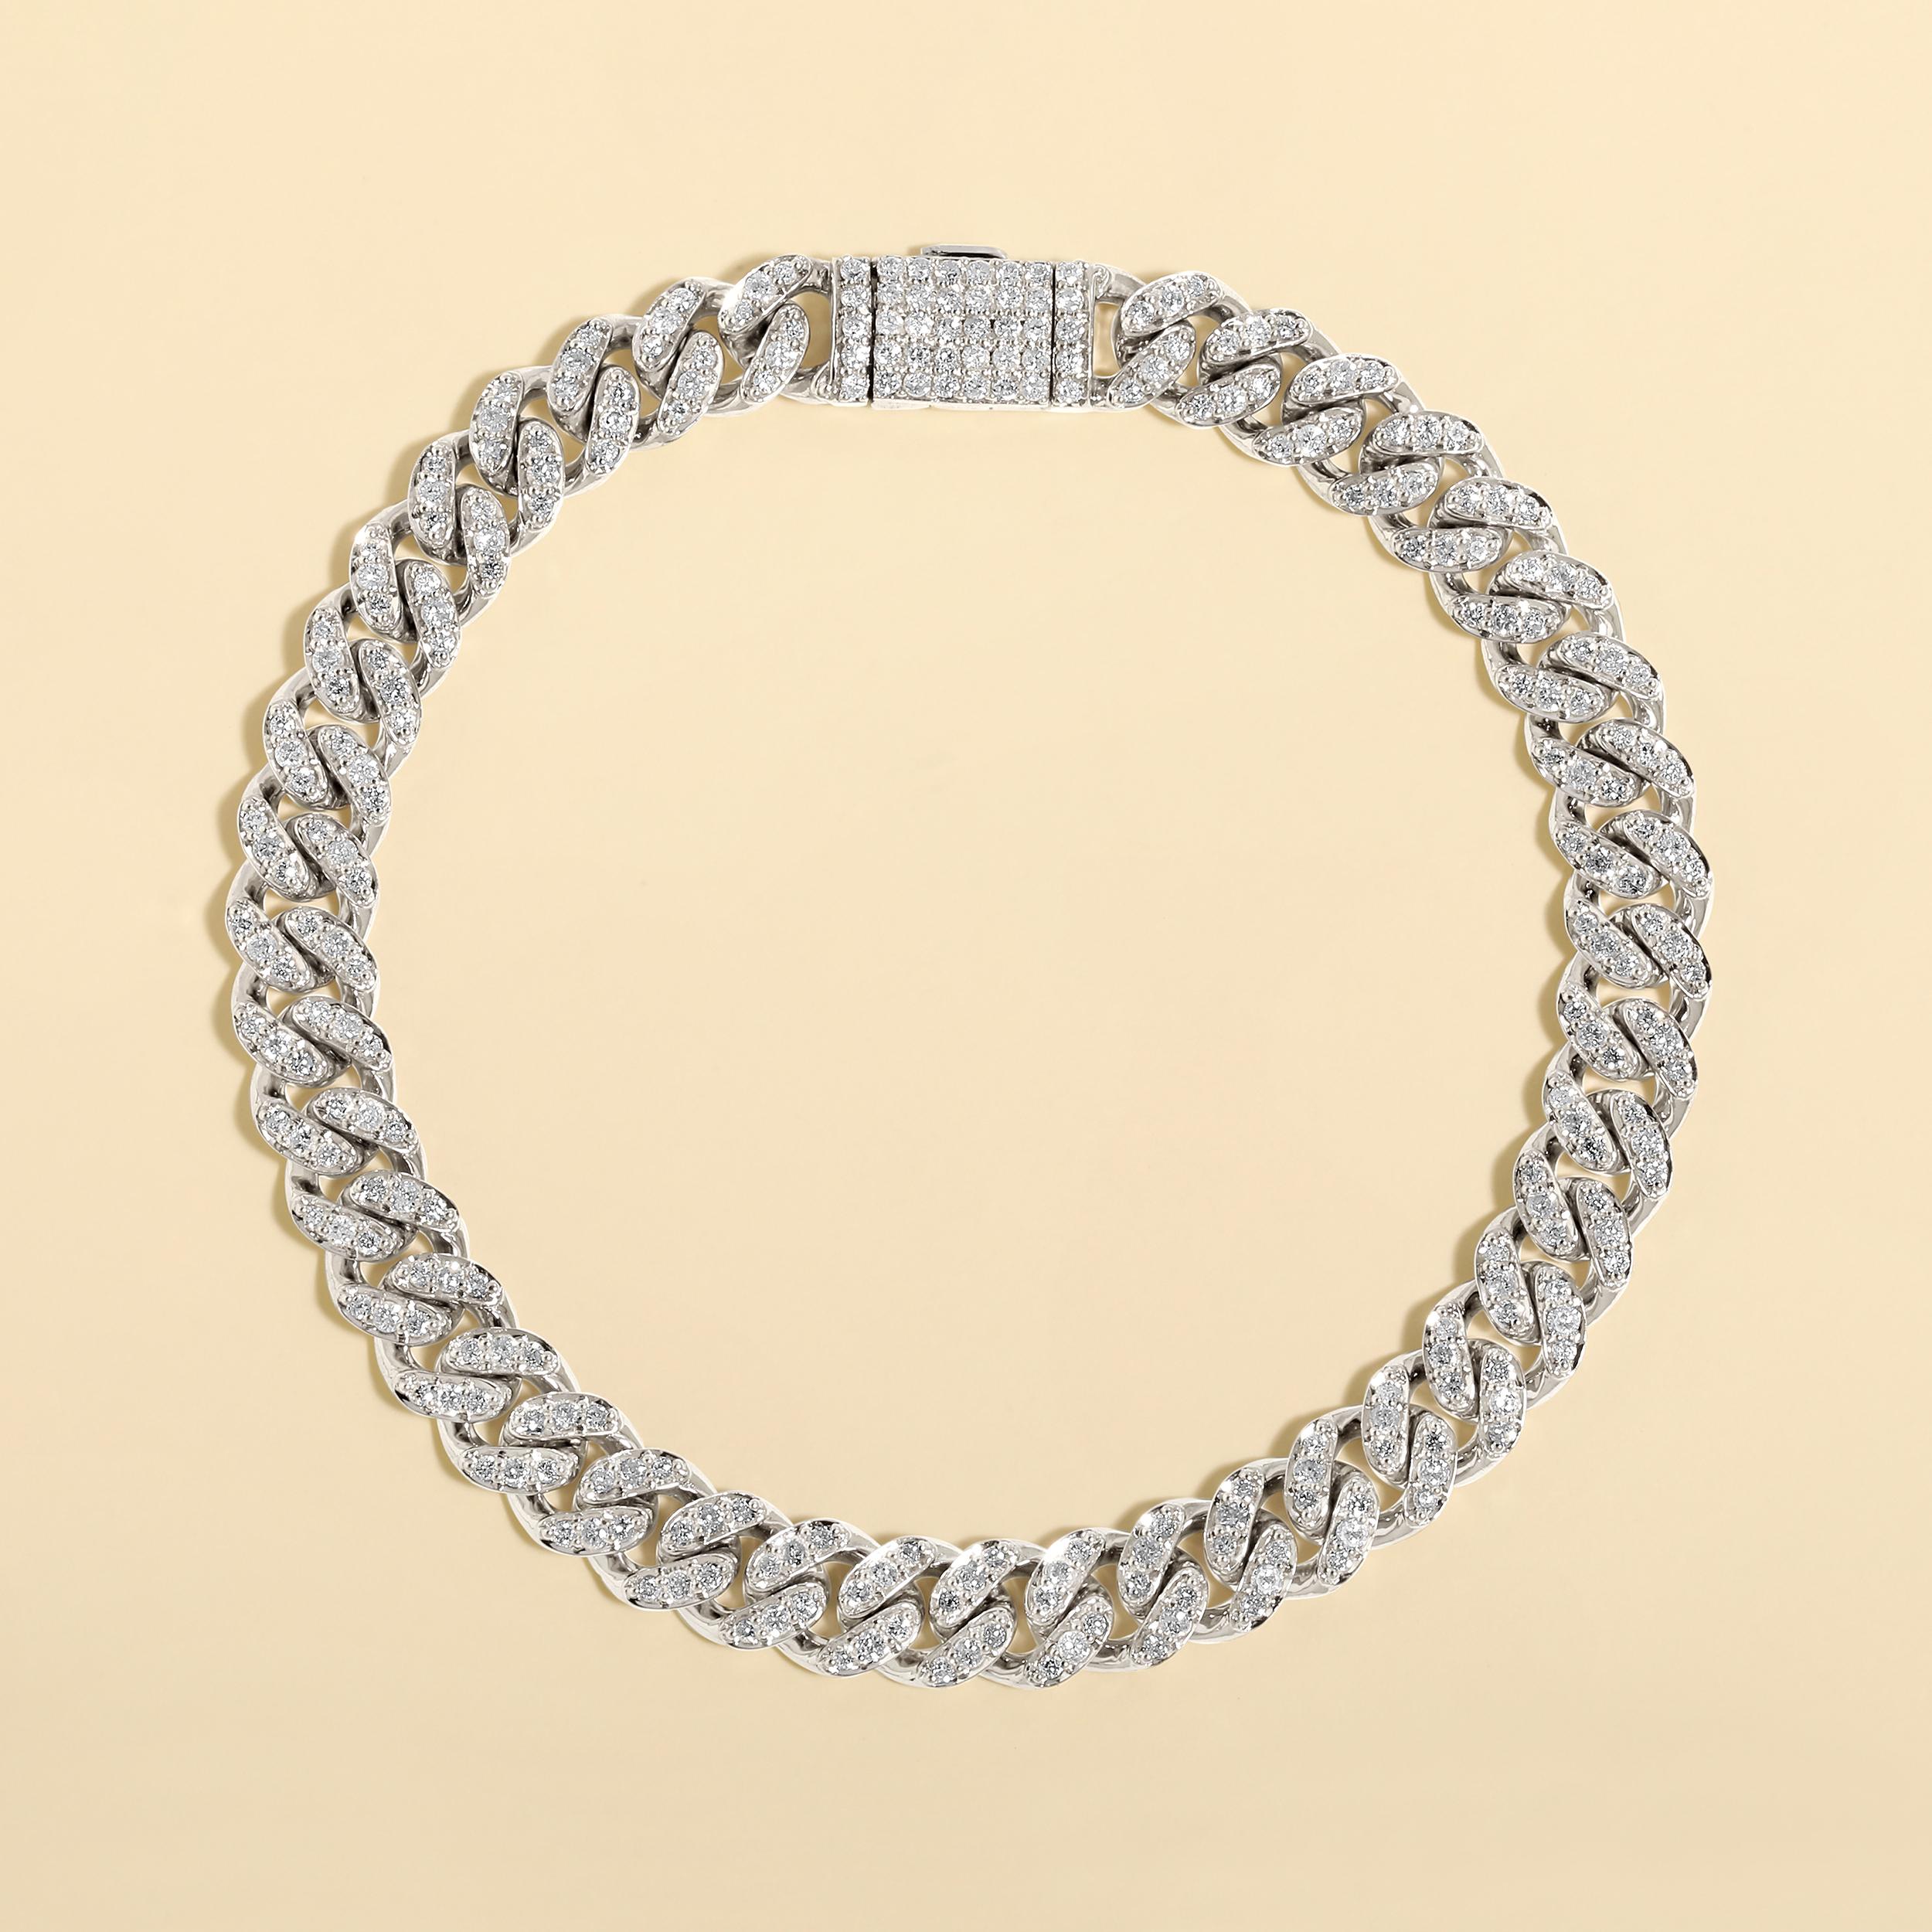 Fabriqué en or blanc 10K de 18,08 grammes, le bracelet contient 286 pierres de diamants ronds naturels d'un total de 2,4 carats de couleur F-G et de pureté I1-I2. La longueur du bracelet est de 7,5 pouces.

UNE ESSENCE CONTEMPORAINE ET INTEMPORELLE